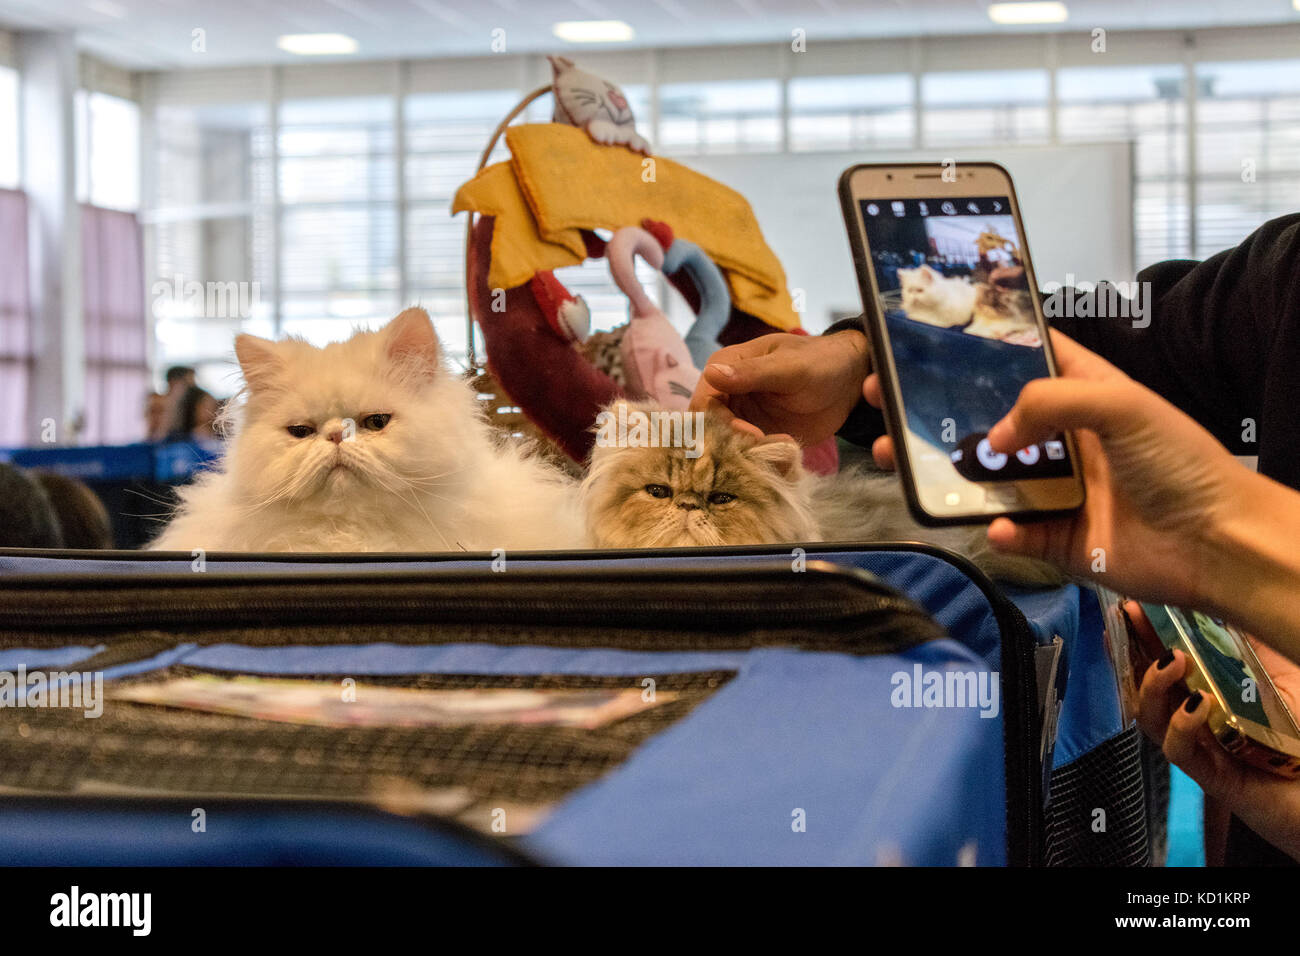 Photographier des personnes non identifiées, deux chats de race pure avec les téléphones portables et smartphones caméra Banque D'Images